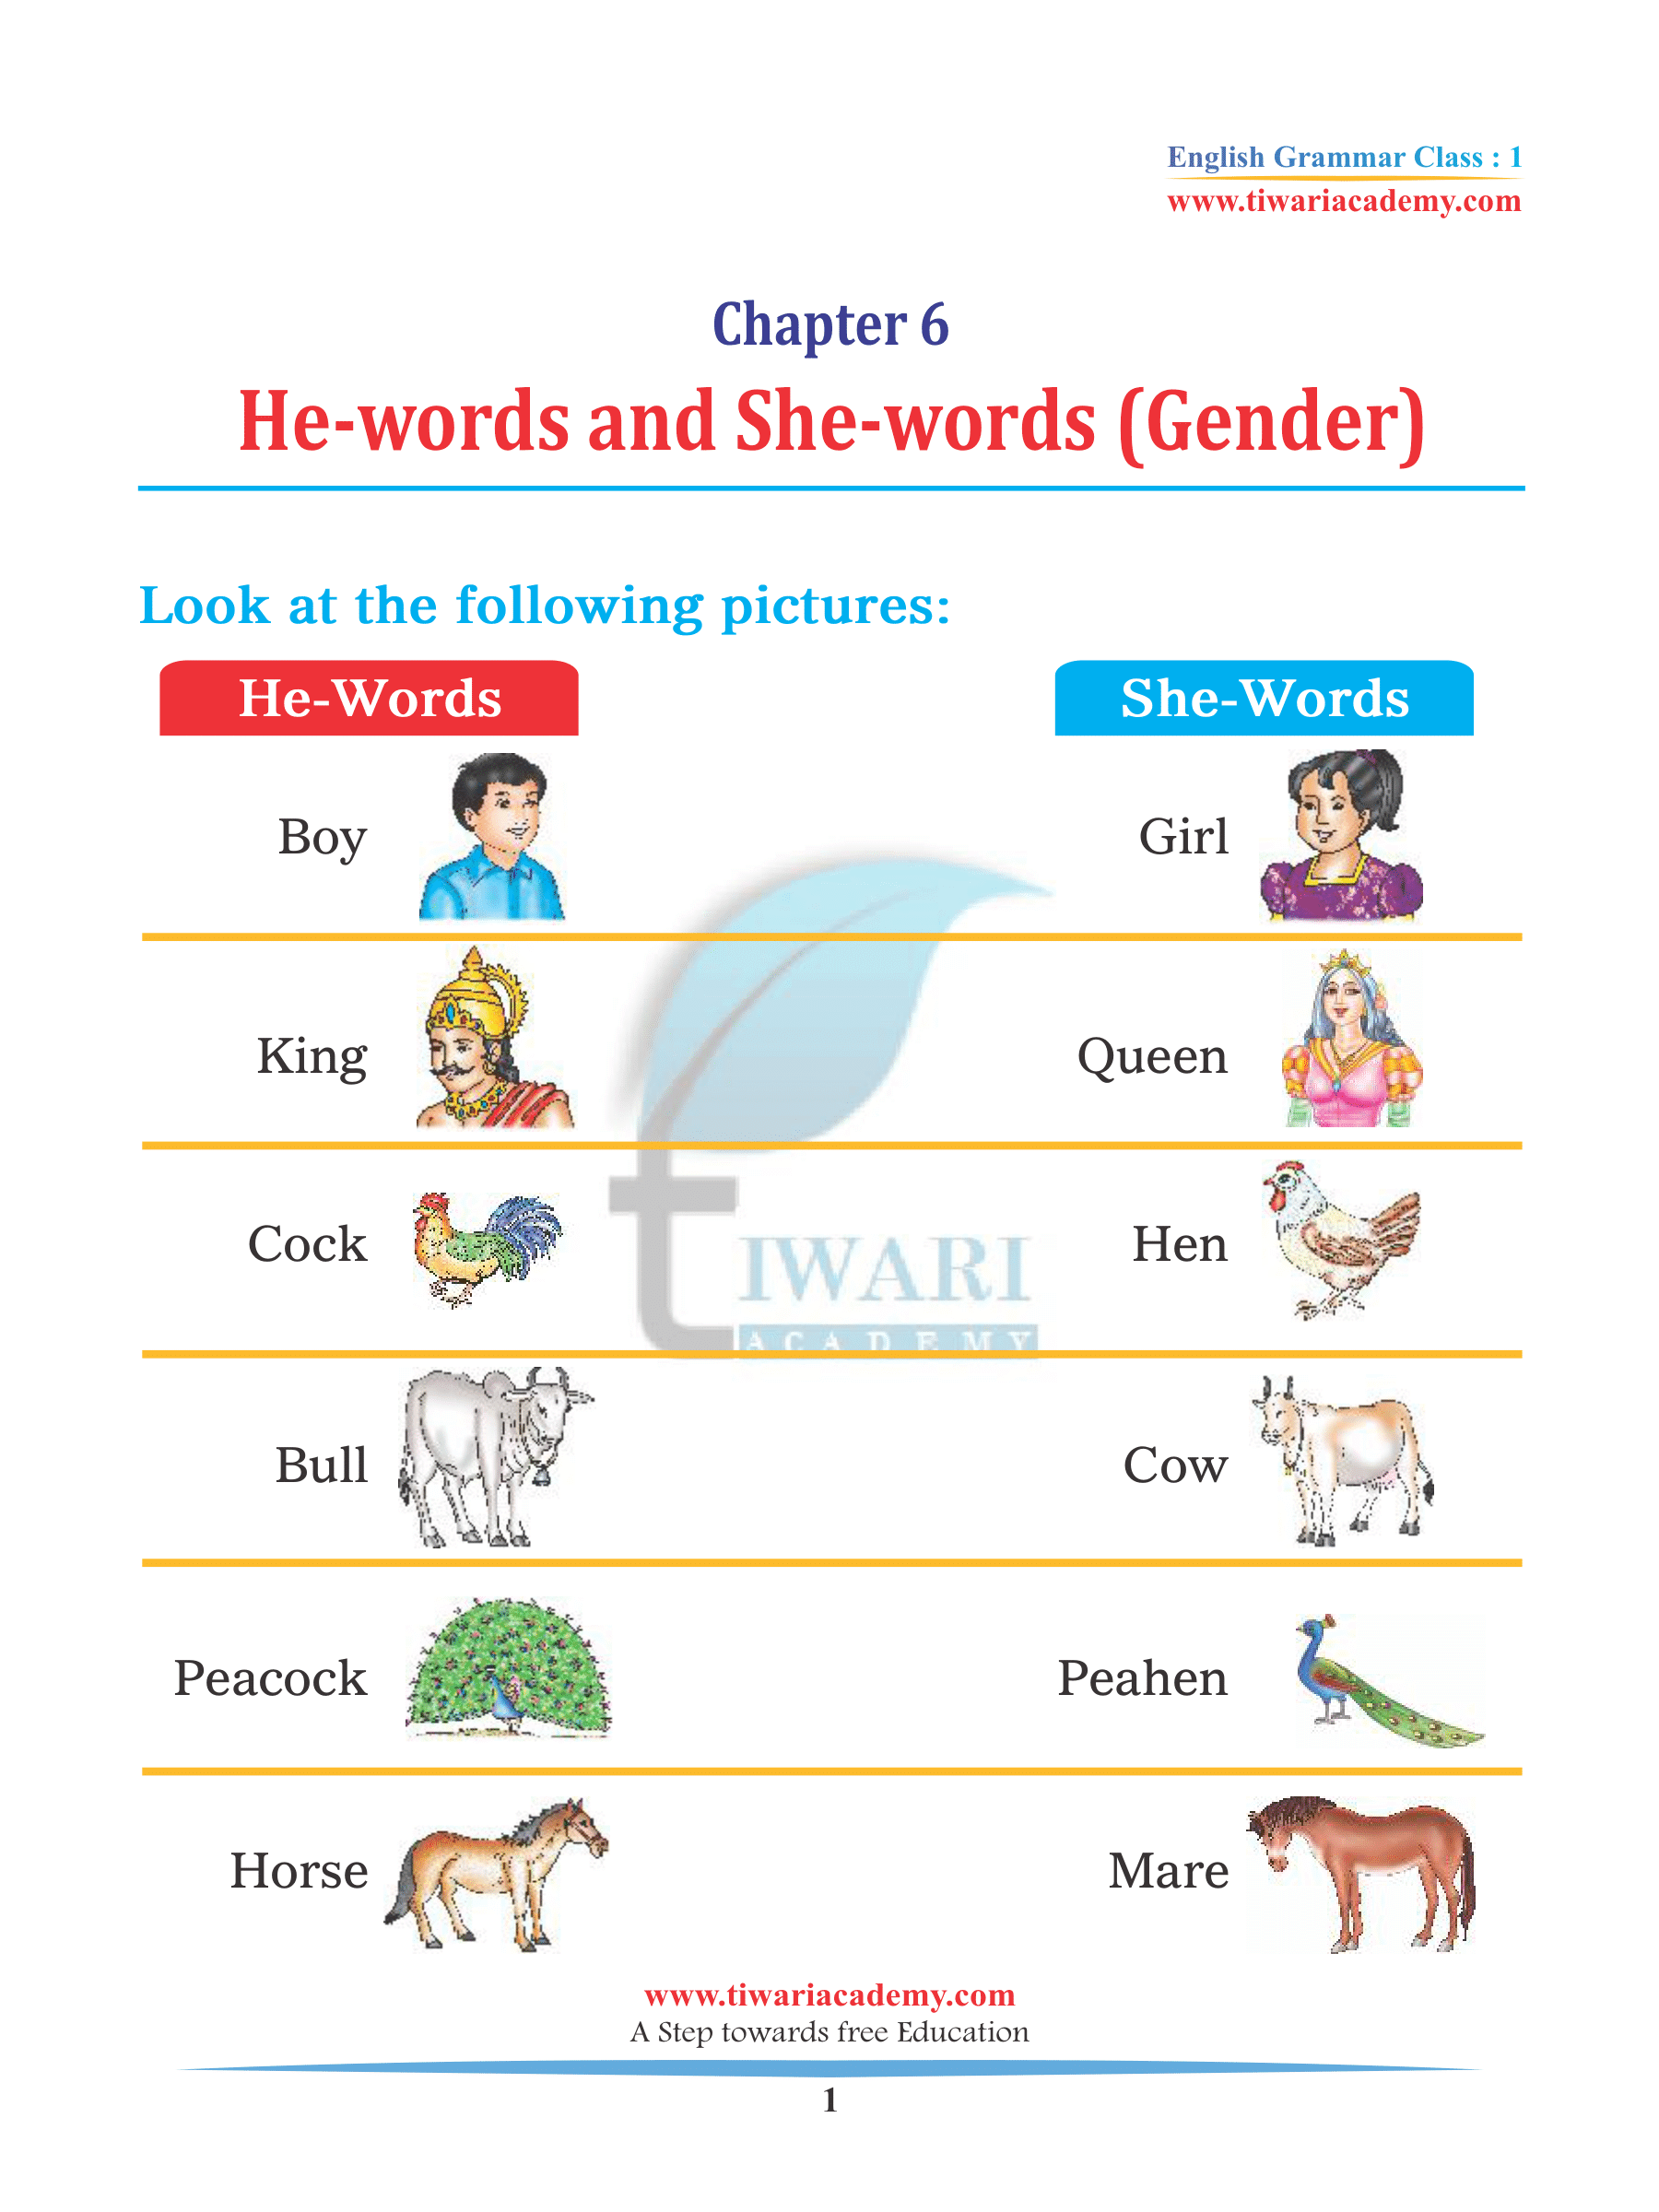 Noun Gender for class 1